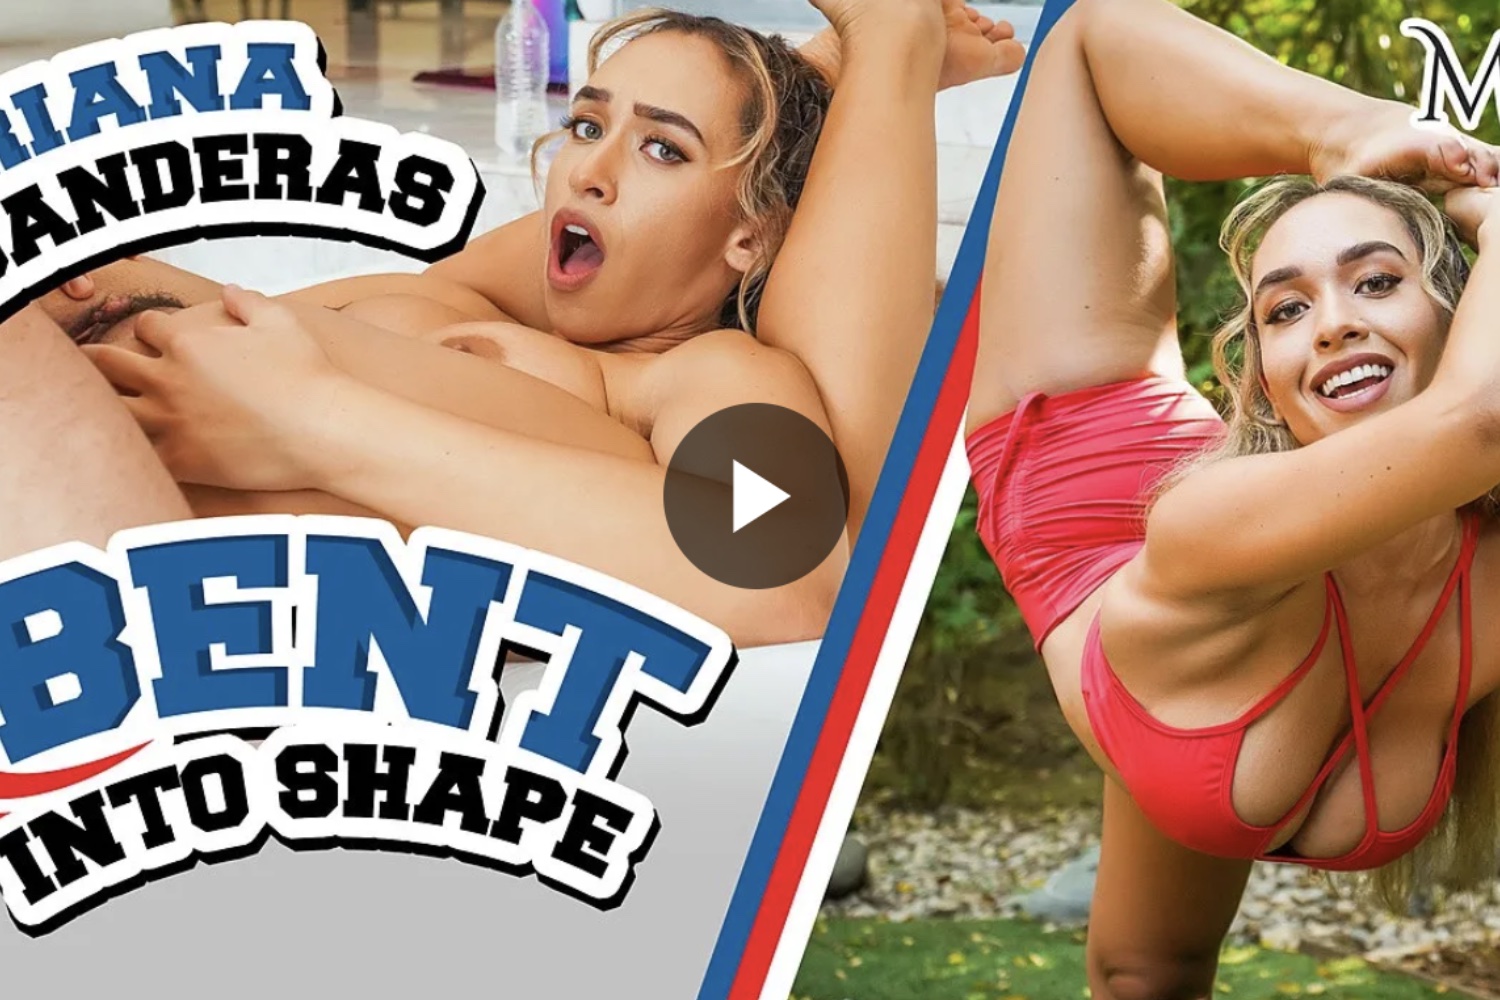 Bent into Shape - Briana Banderas VR Porn - Briana Banderas Virtual Reality Porn